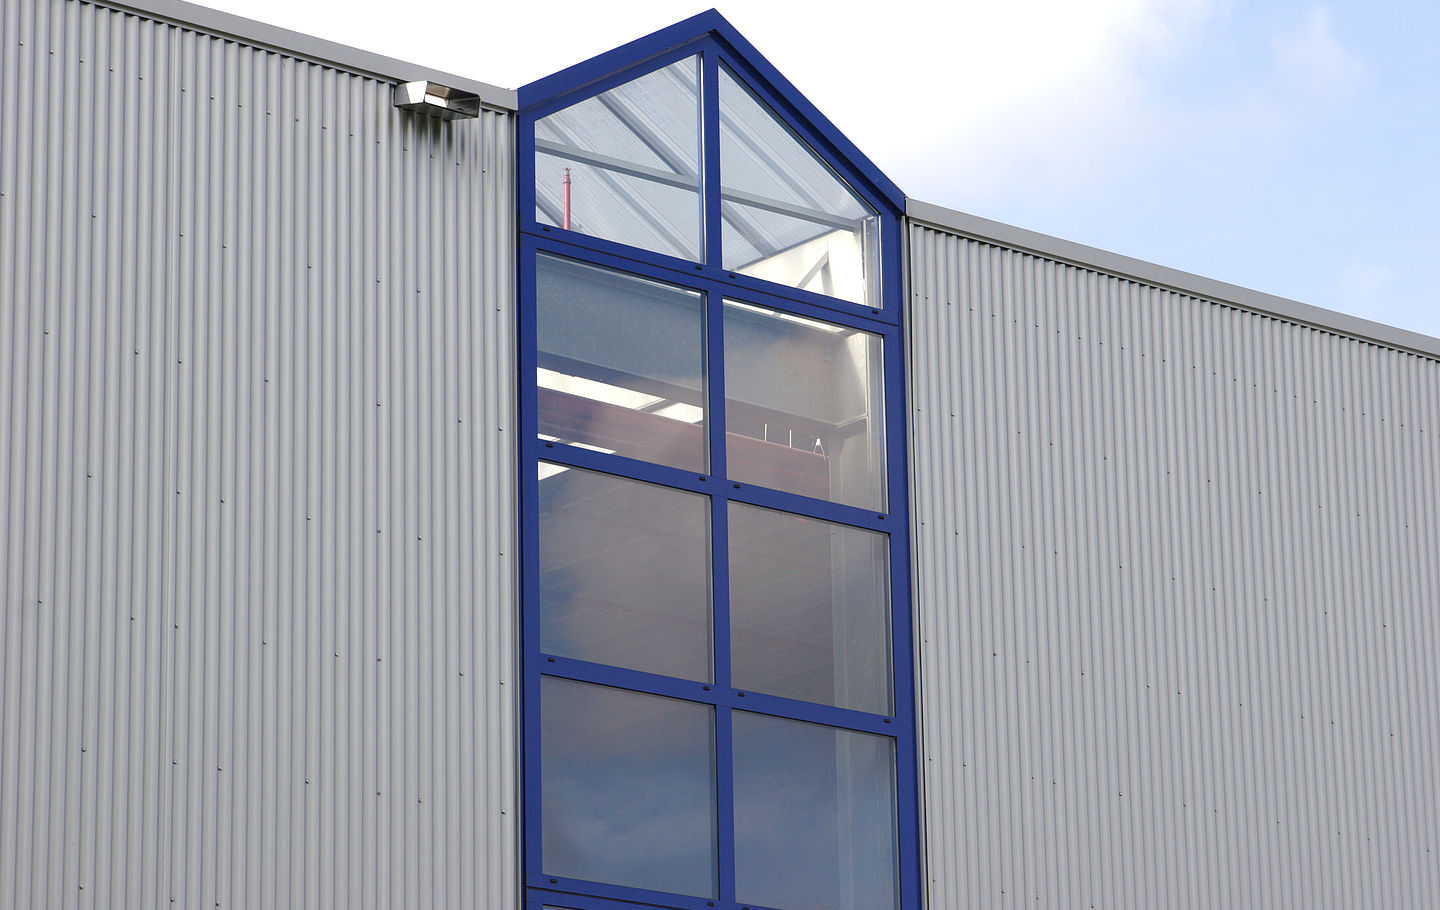 Aluminiumglasfassade des Herstellers Heroal an einem Hallenbau der Firma Schreiber Stahlbau